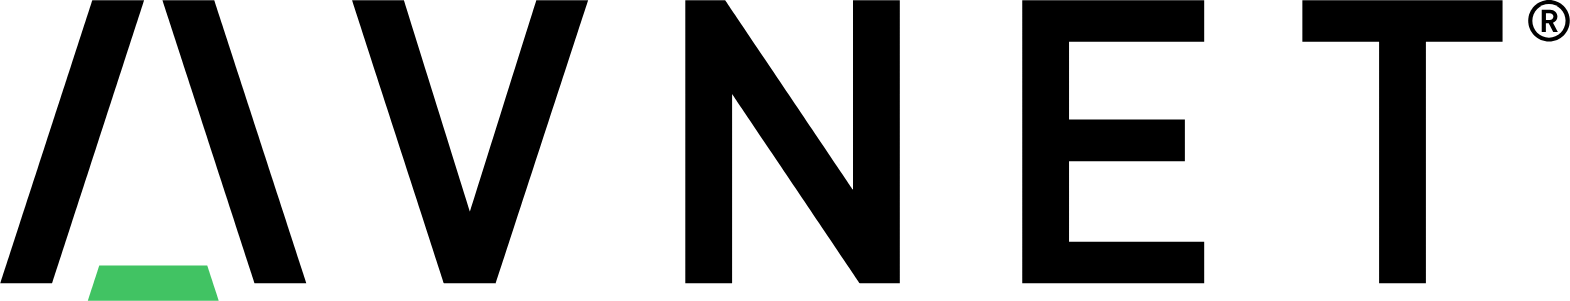 Avnet logo large (transparent PNG)